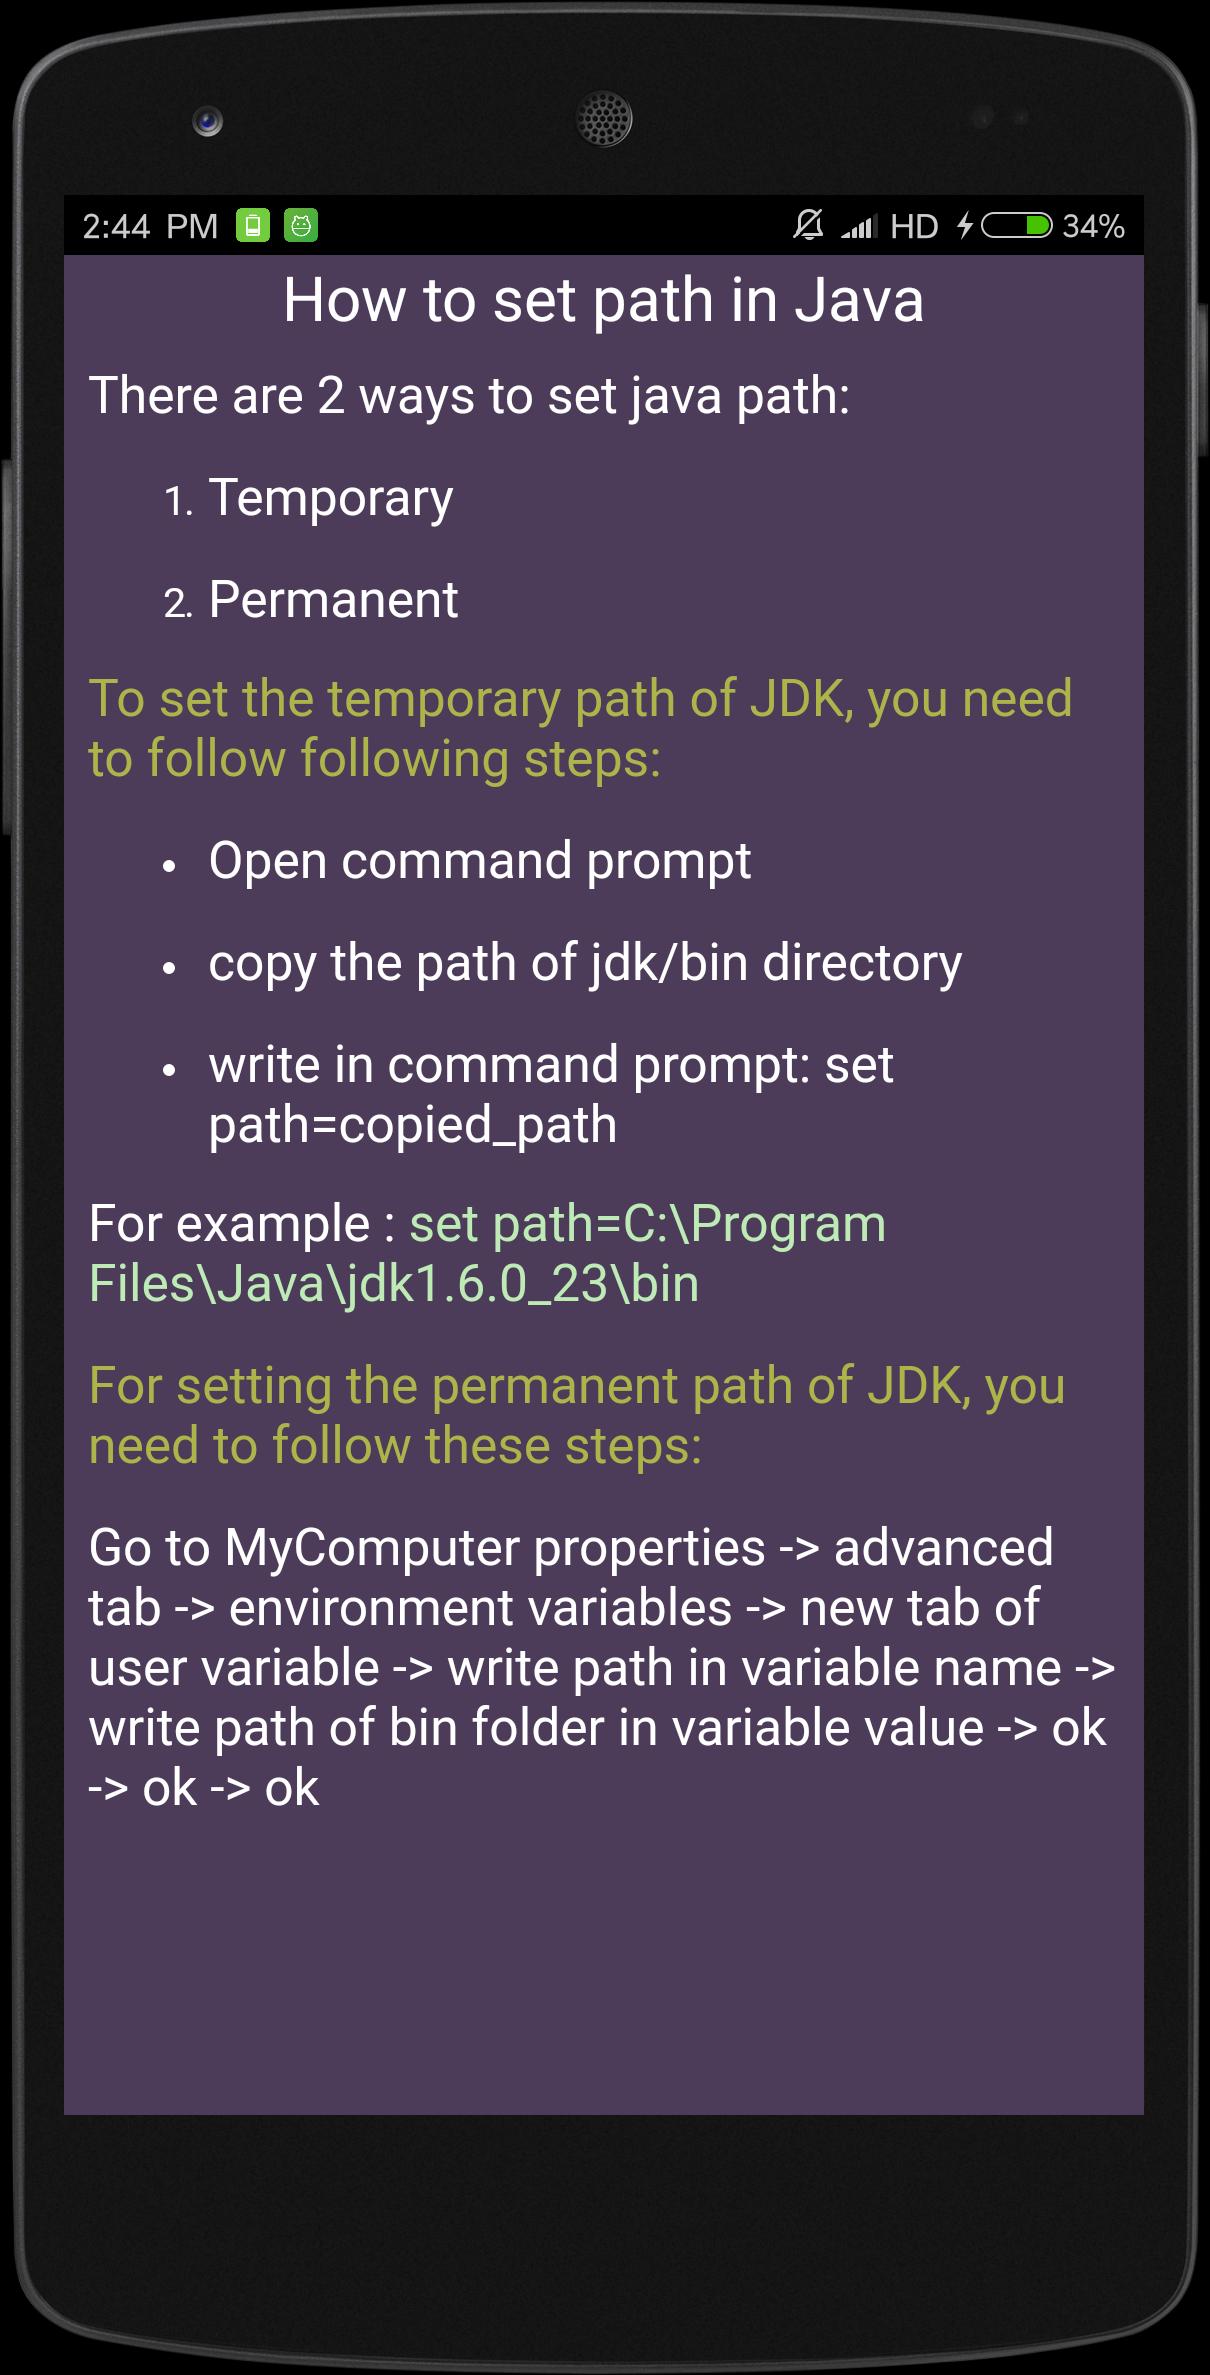 Начинающие Учебник Java Для Андроид - Скачать APK